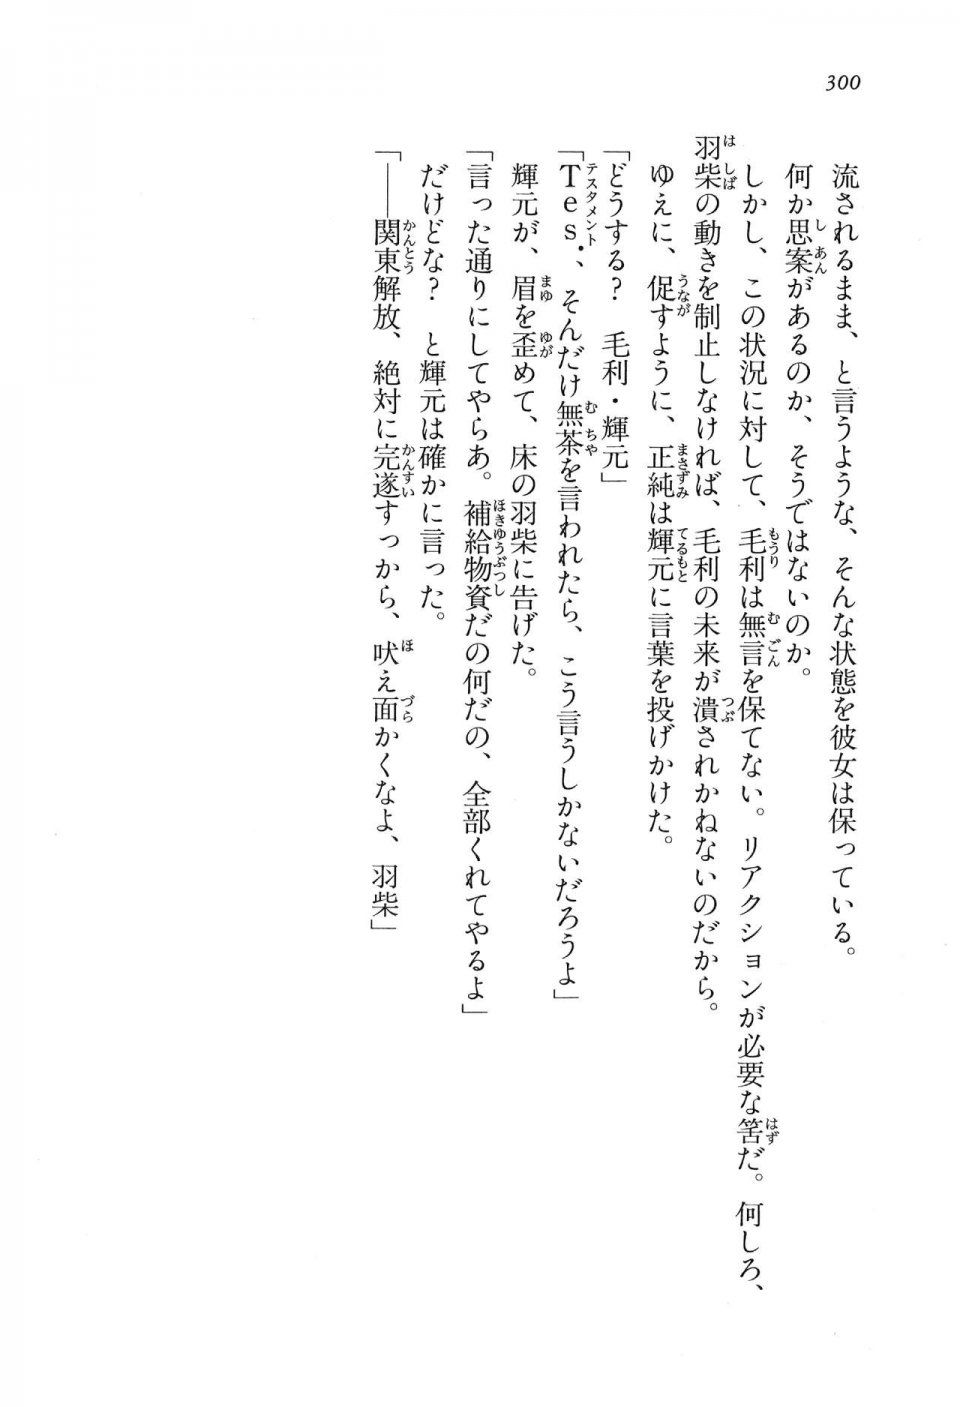 Kyoukai Senjou no Horizon LN Vol 16(7A) - Photo #300